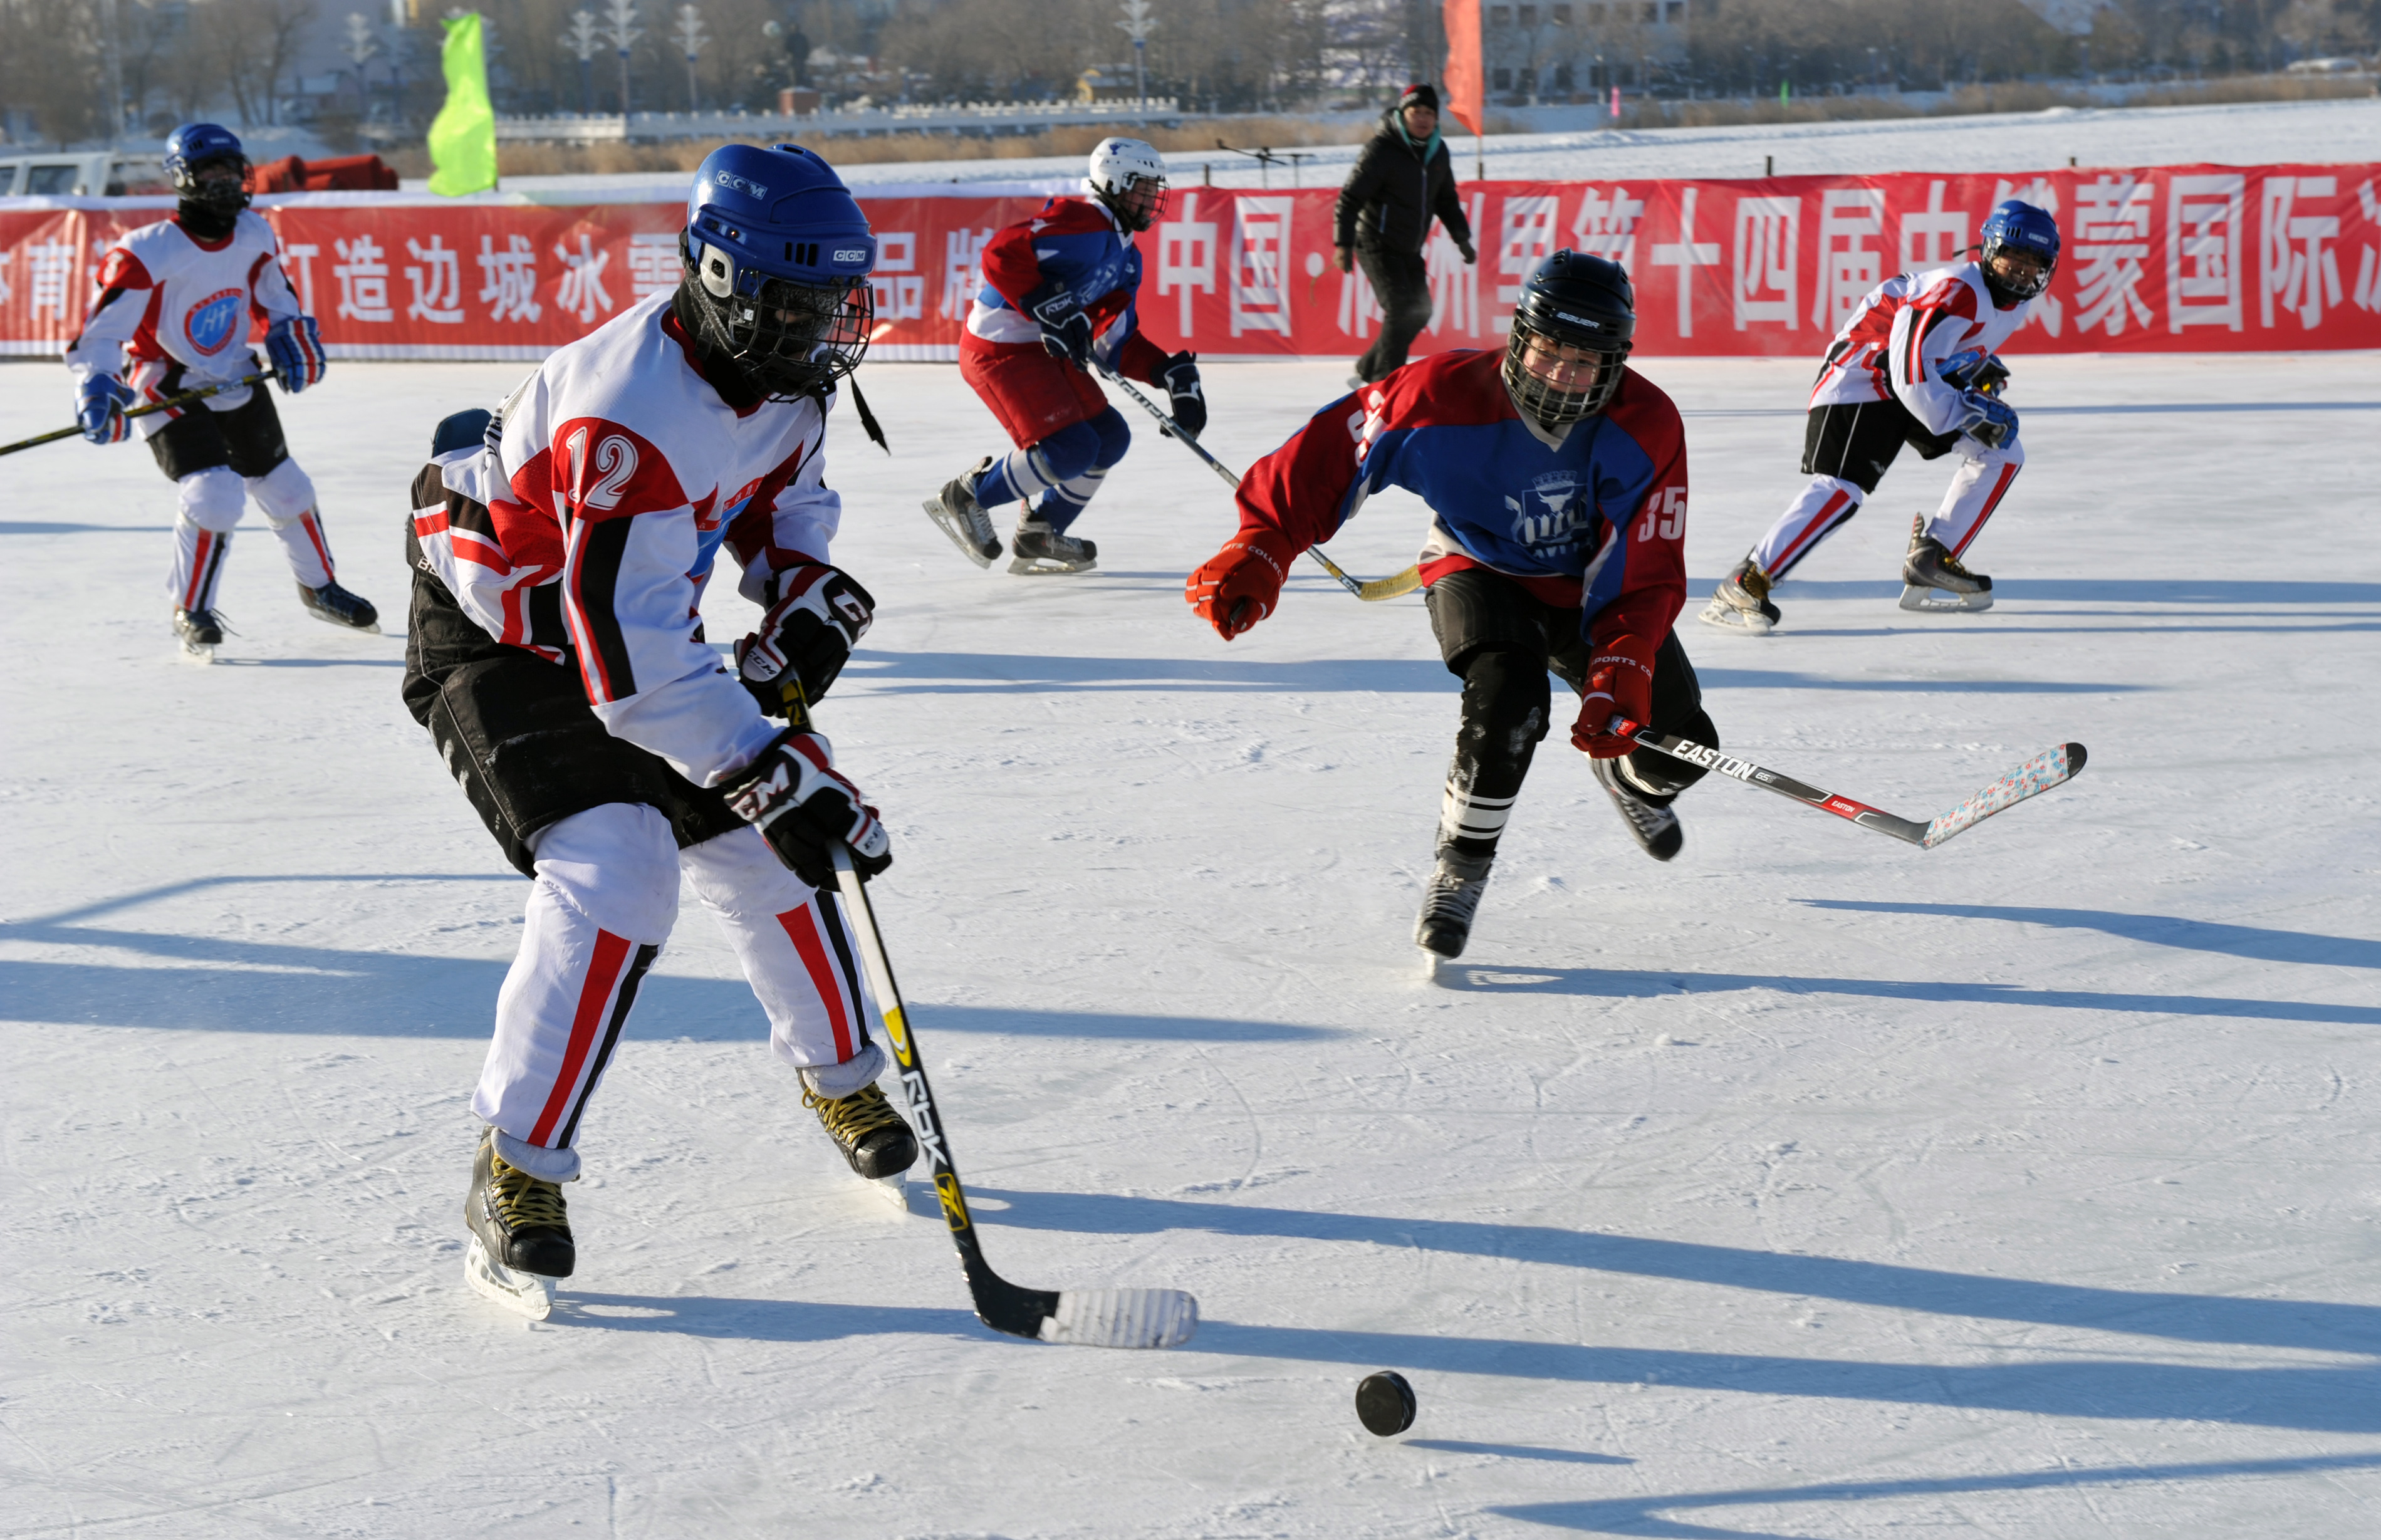 第三届哈尔滨少儿冰球国际邀请赛,天津全明星挑战者冰球俱乐部队以7比